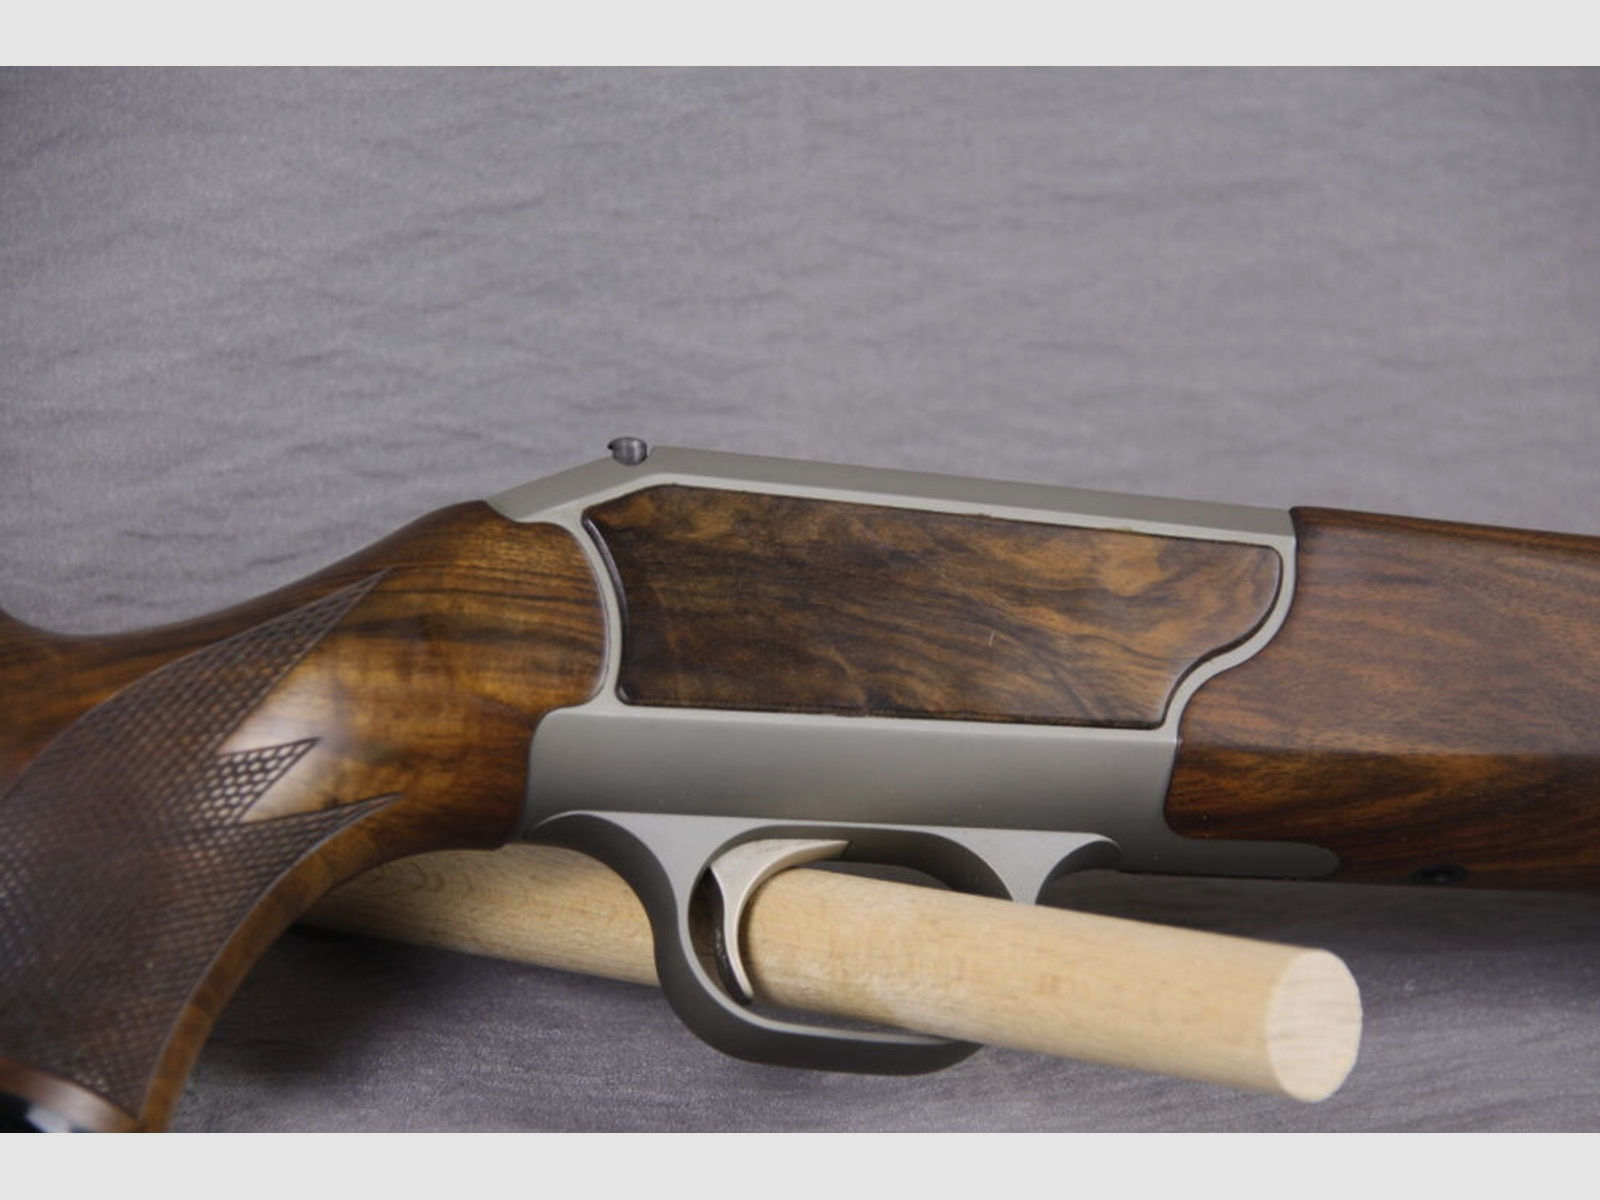 Blaser	 R93 / Komplettierung Luxus-Holz!